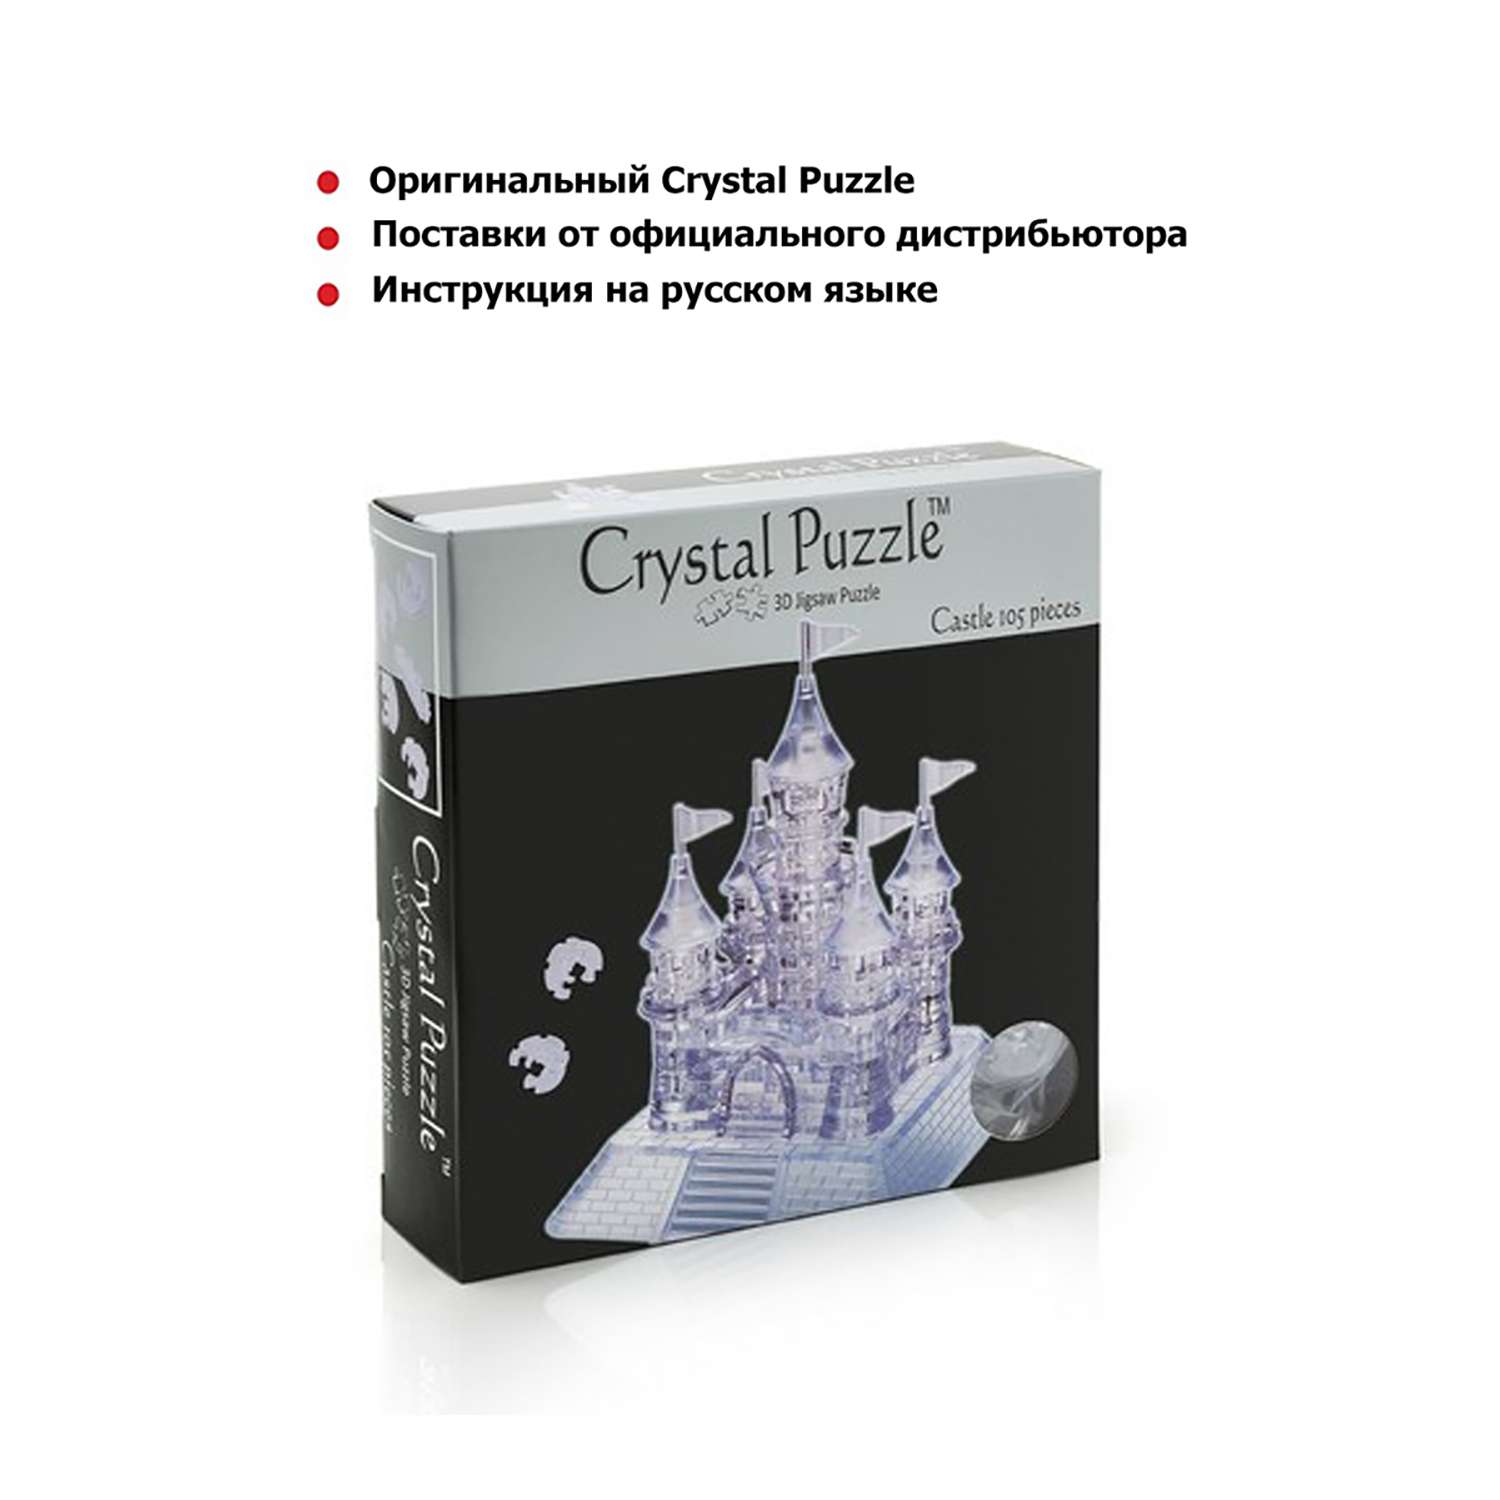 Crystal Puzzle: отзывы